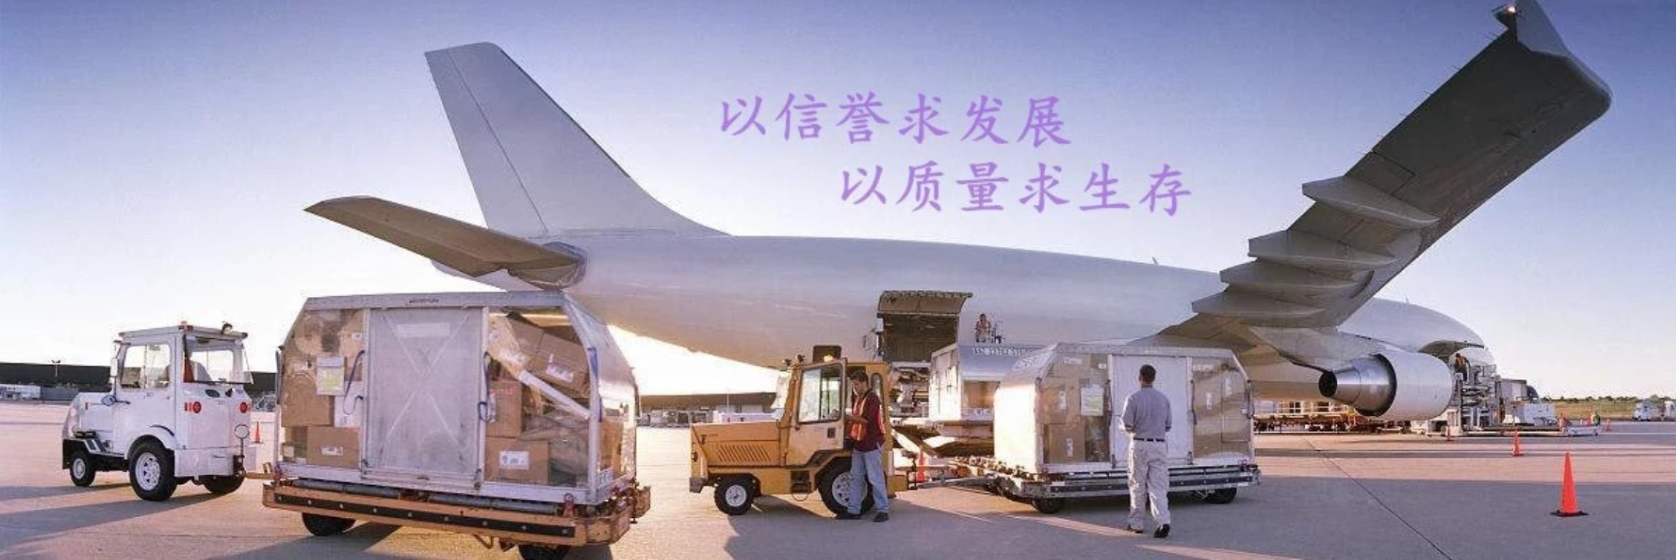 上海到波斯顿空运订舱货代专线口罩洗手液浦东机场物流